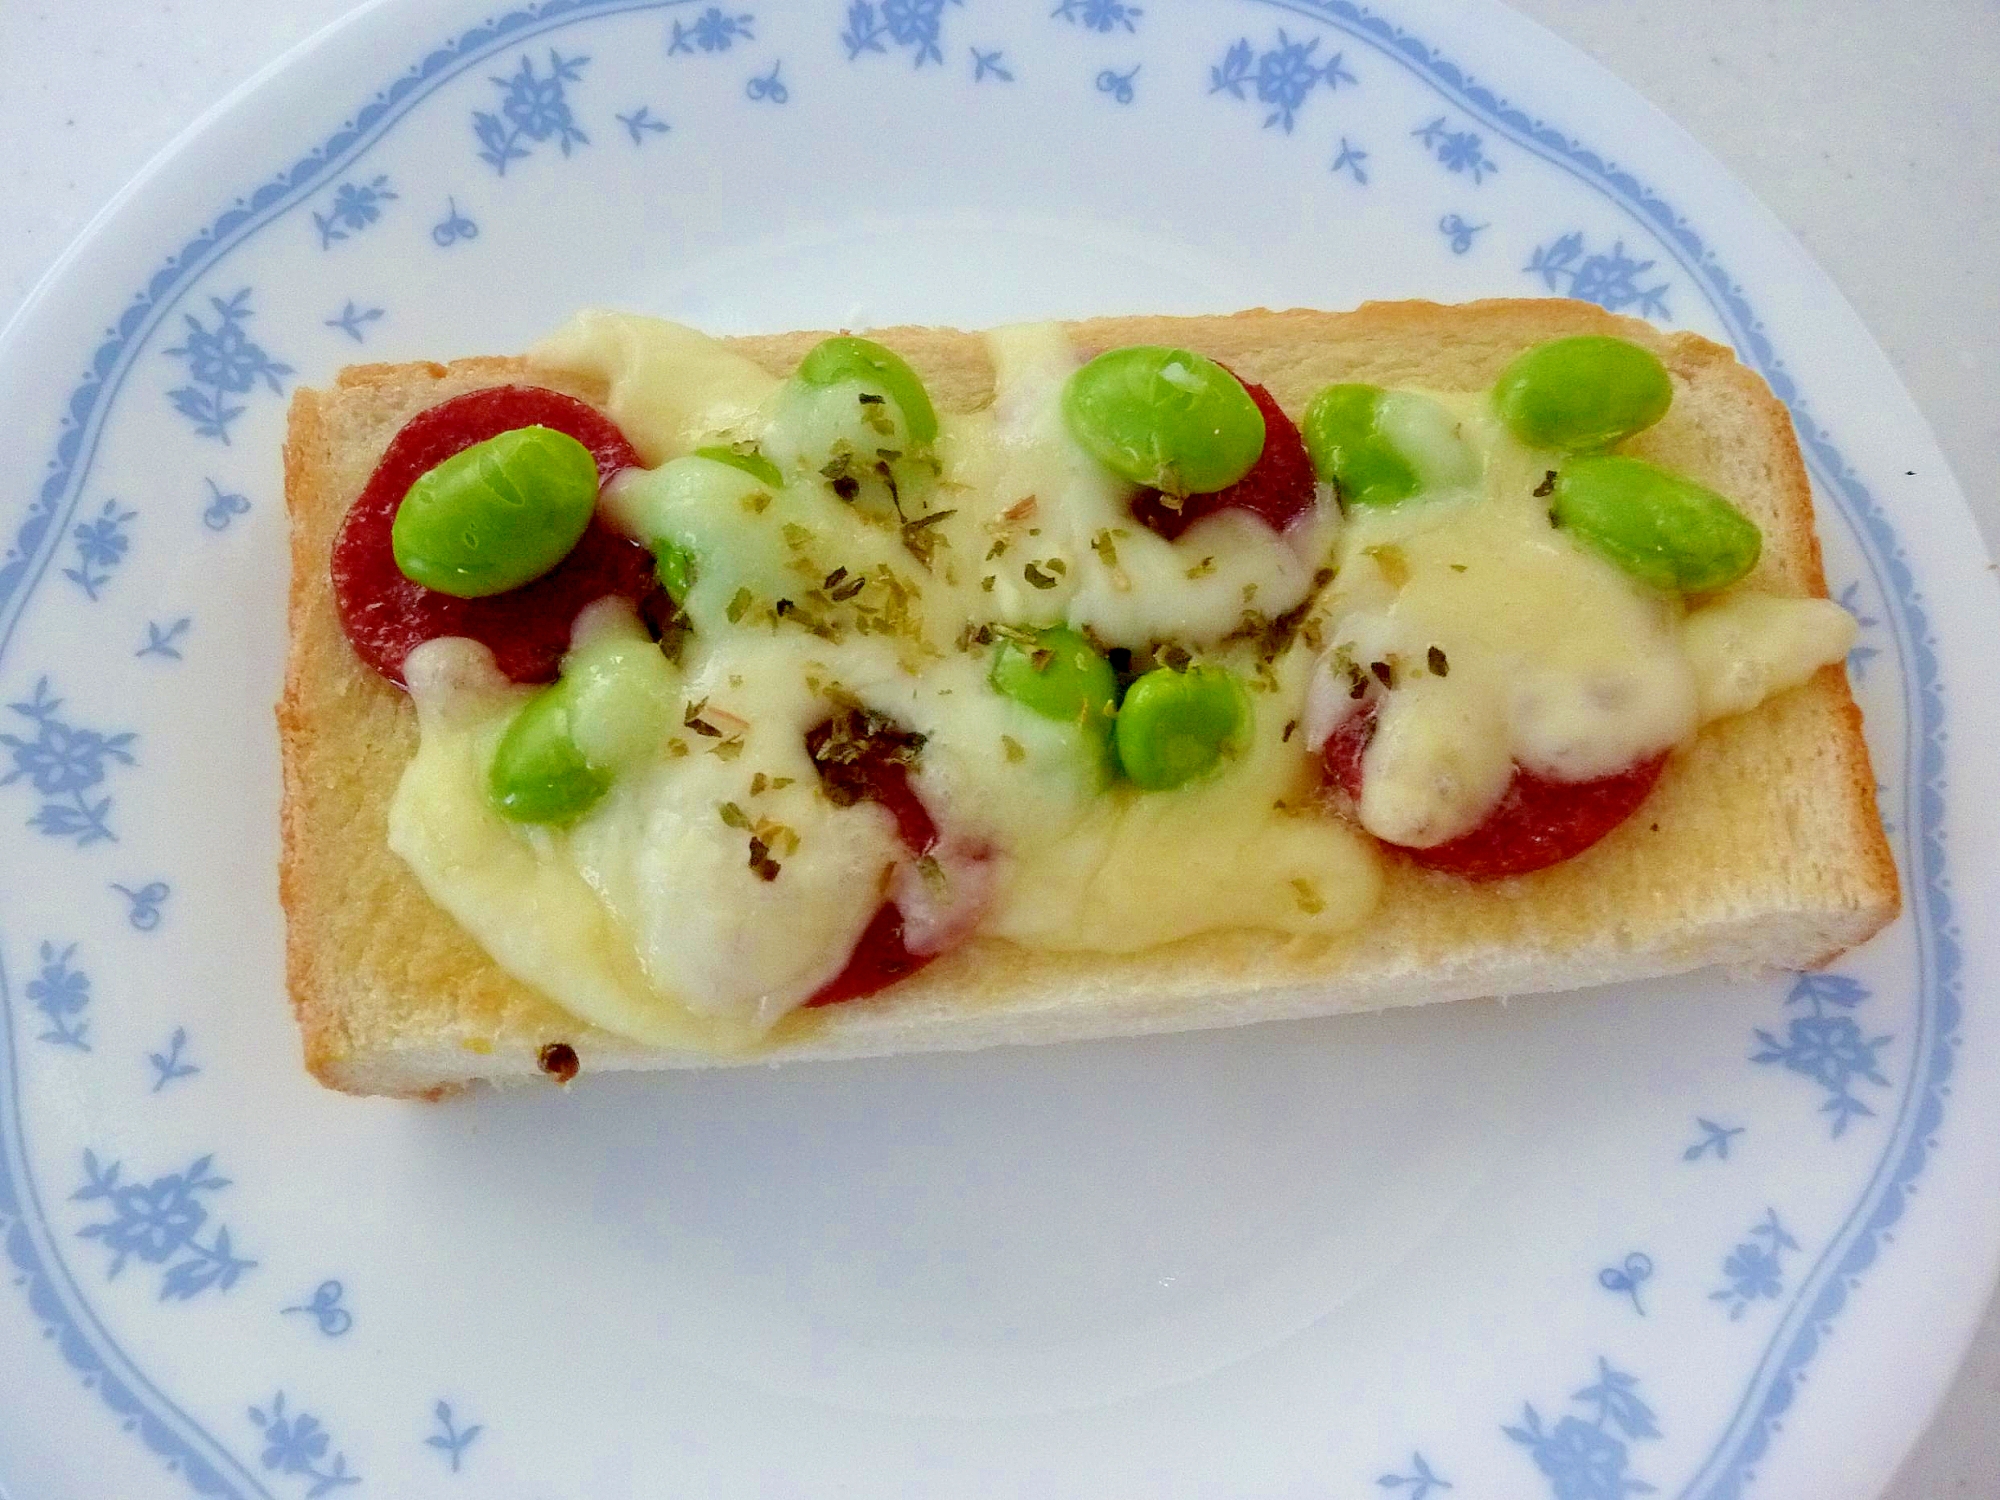 ☆枝豆とサラミのバジルチーズトースト☆